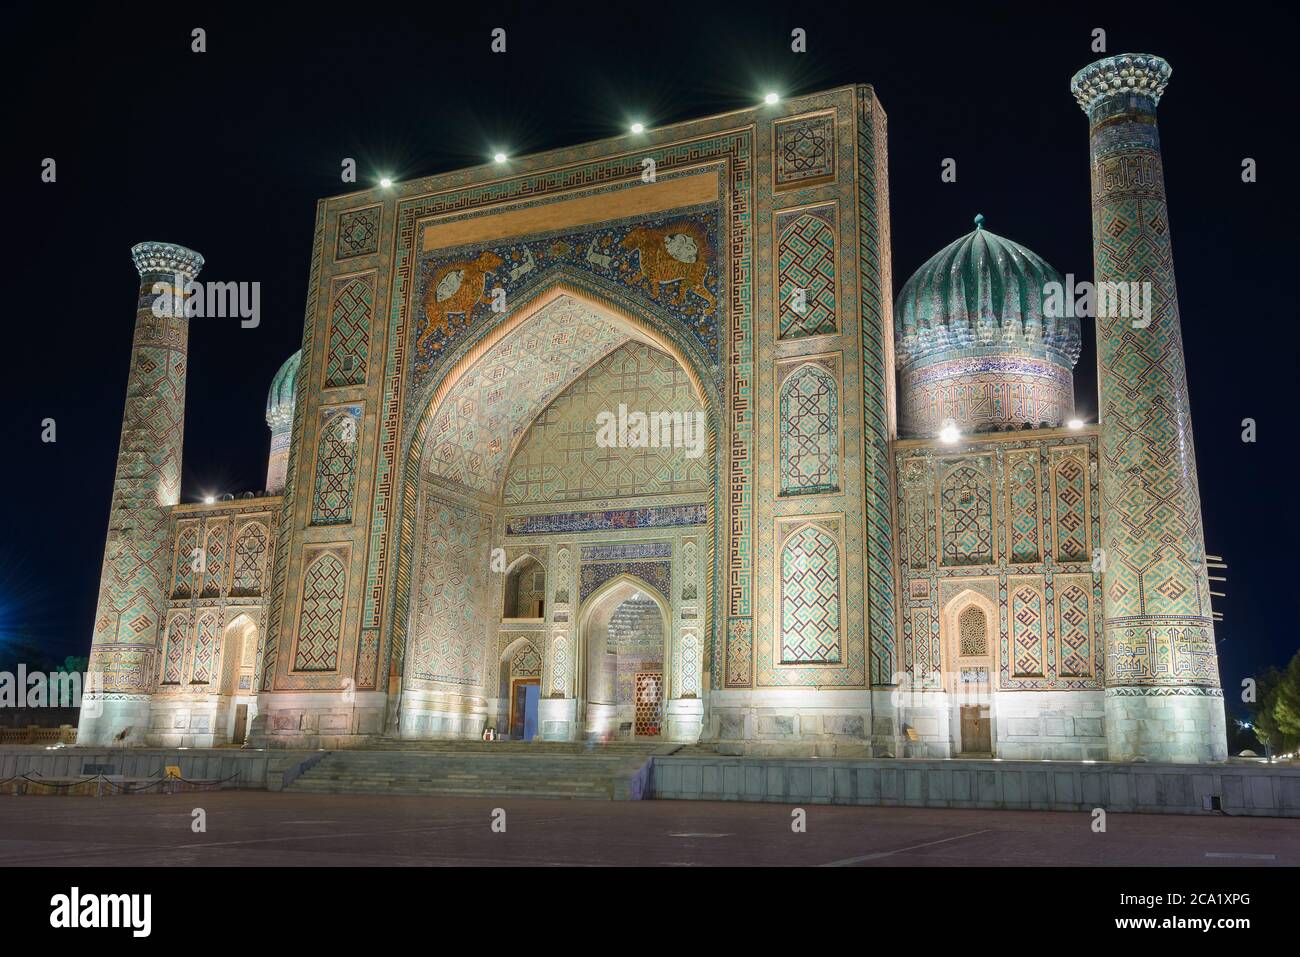 Sher Dor Madrasah di notte a Samarcanda, Uzbekistan. Edificio islamico con iwan e cupole scanalate decorate con mosaico. Shir Dar madrassa illuminato. Foto Stock